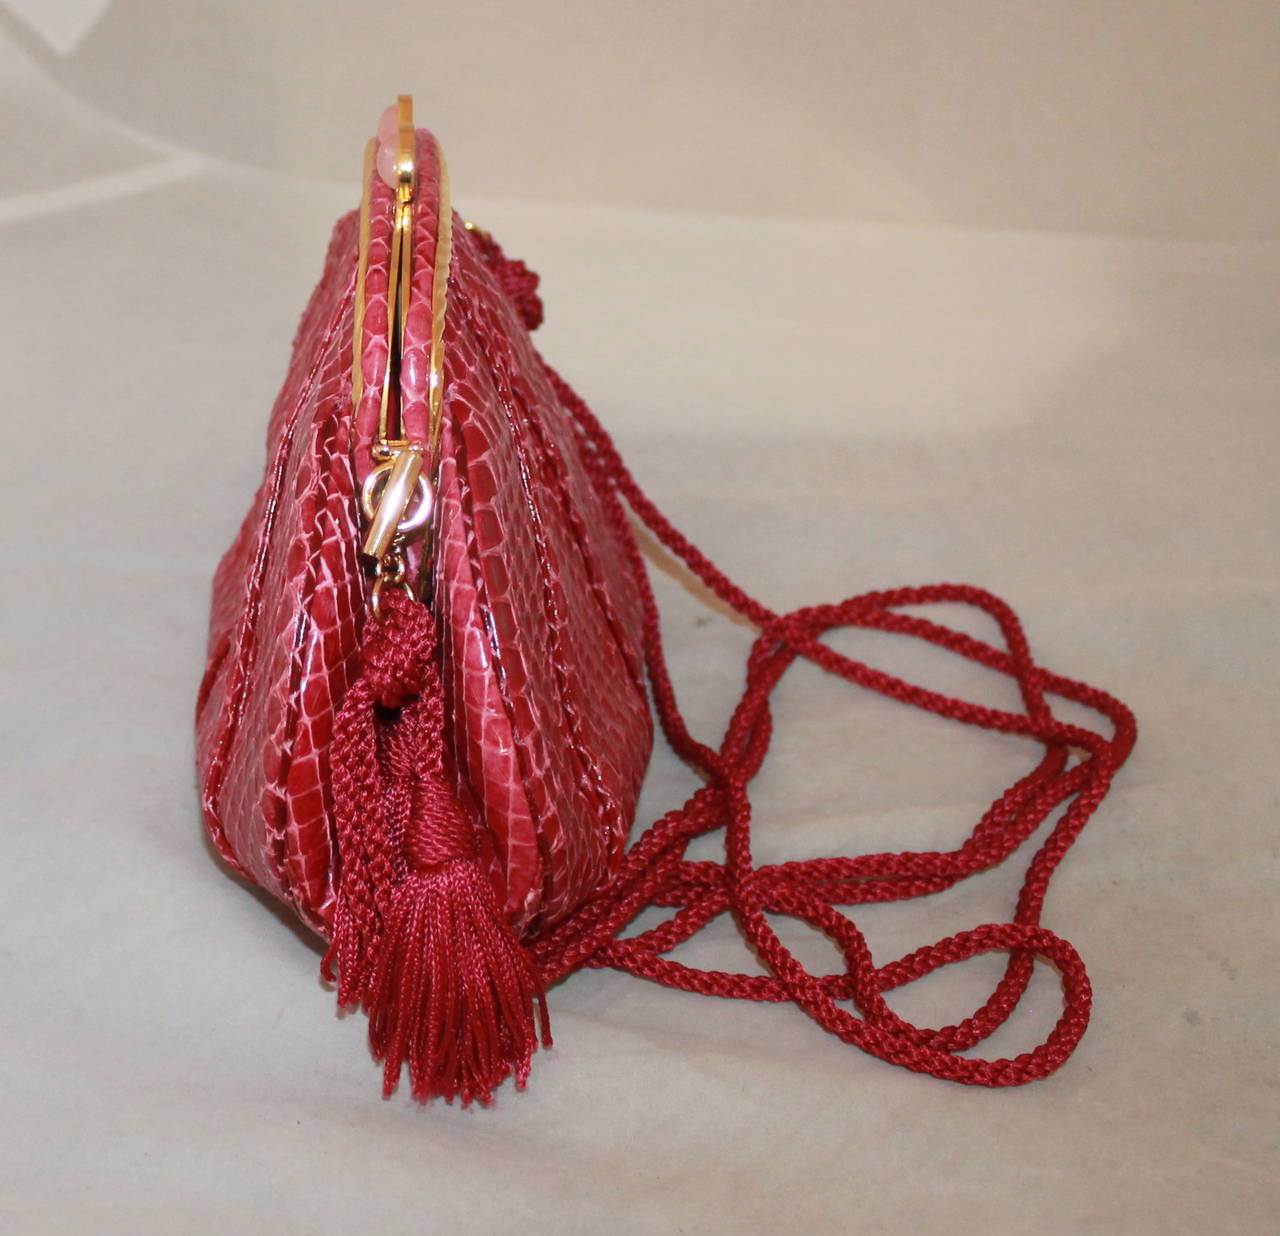 Judith Leiber Vintage Rasberry Schlangenhaut Abendtasche mit Seilgriff. Diese Tasche ist in ausgezeichnetem Zustand mit dem Staubtuch, Münzbeutel, Kamm und Karten. 

Abmessungen:
Länge - 5